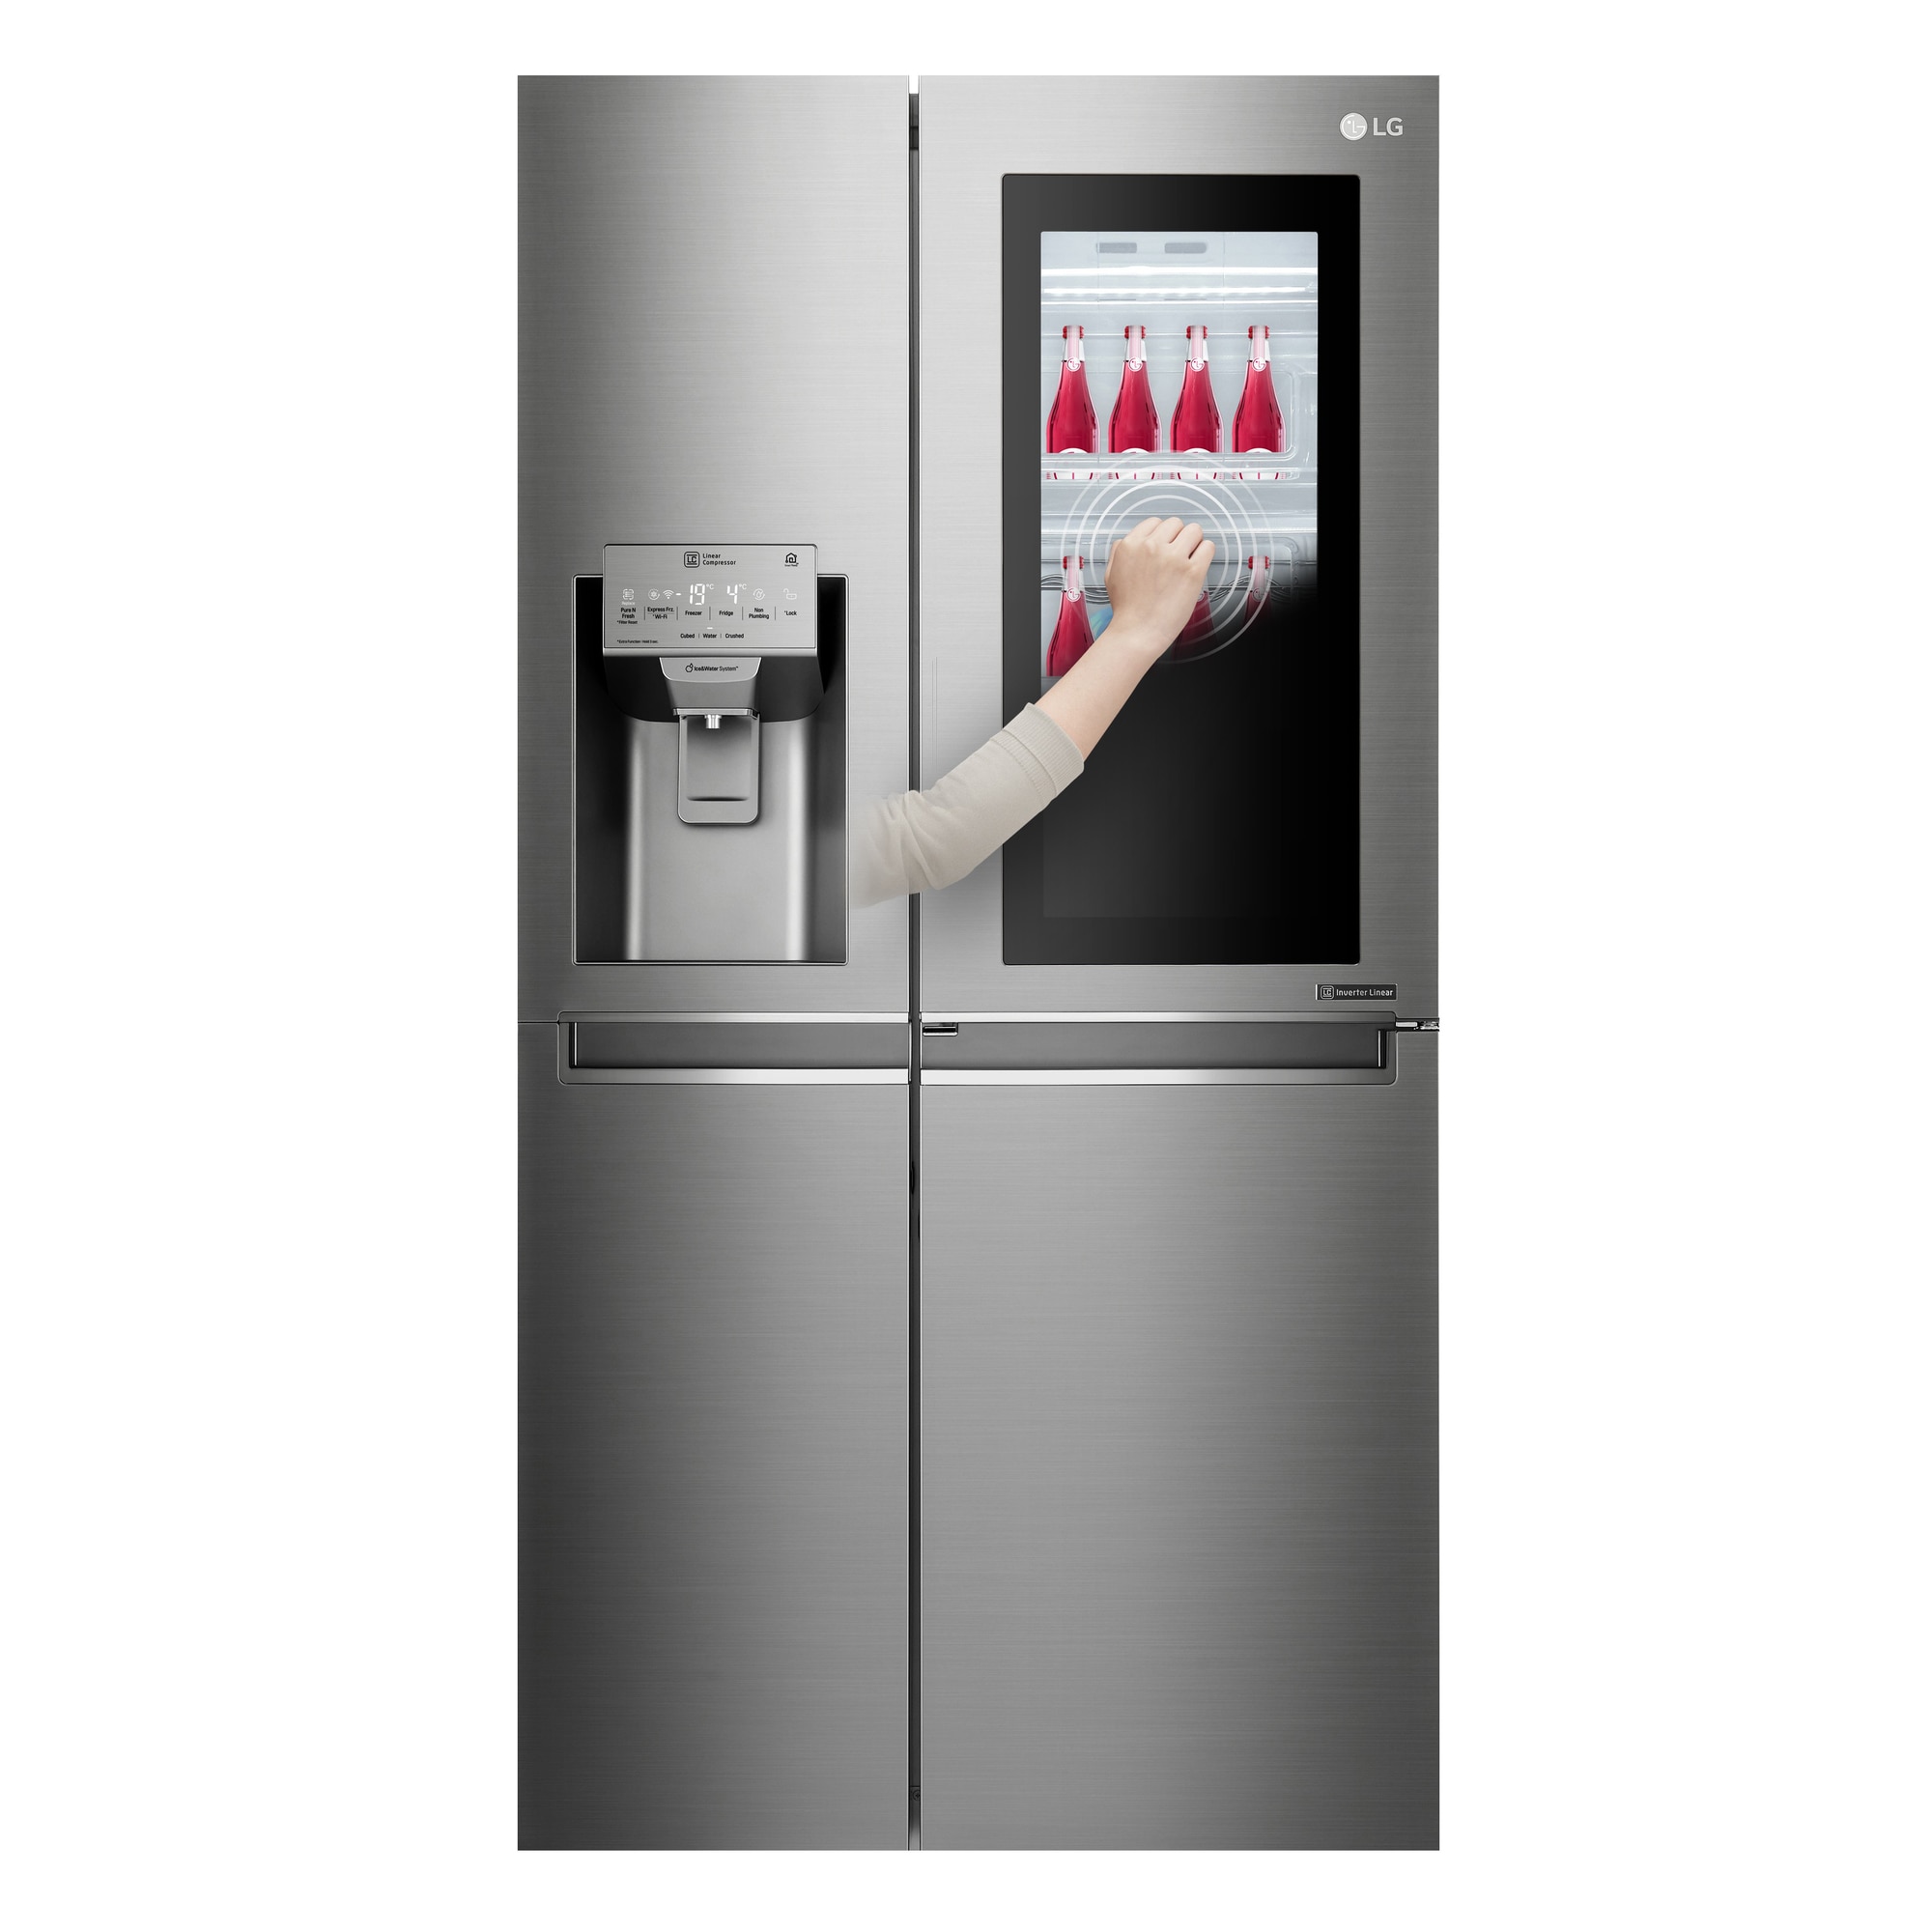 Kjøleskap med fryser - side-by-side - Elkjøp